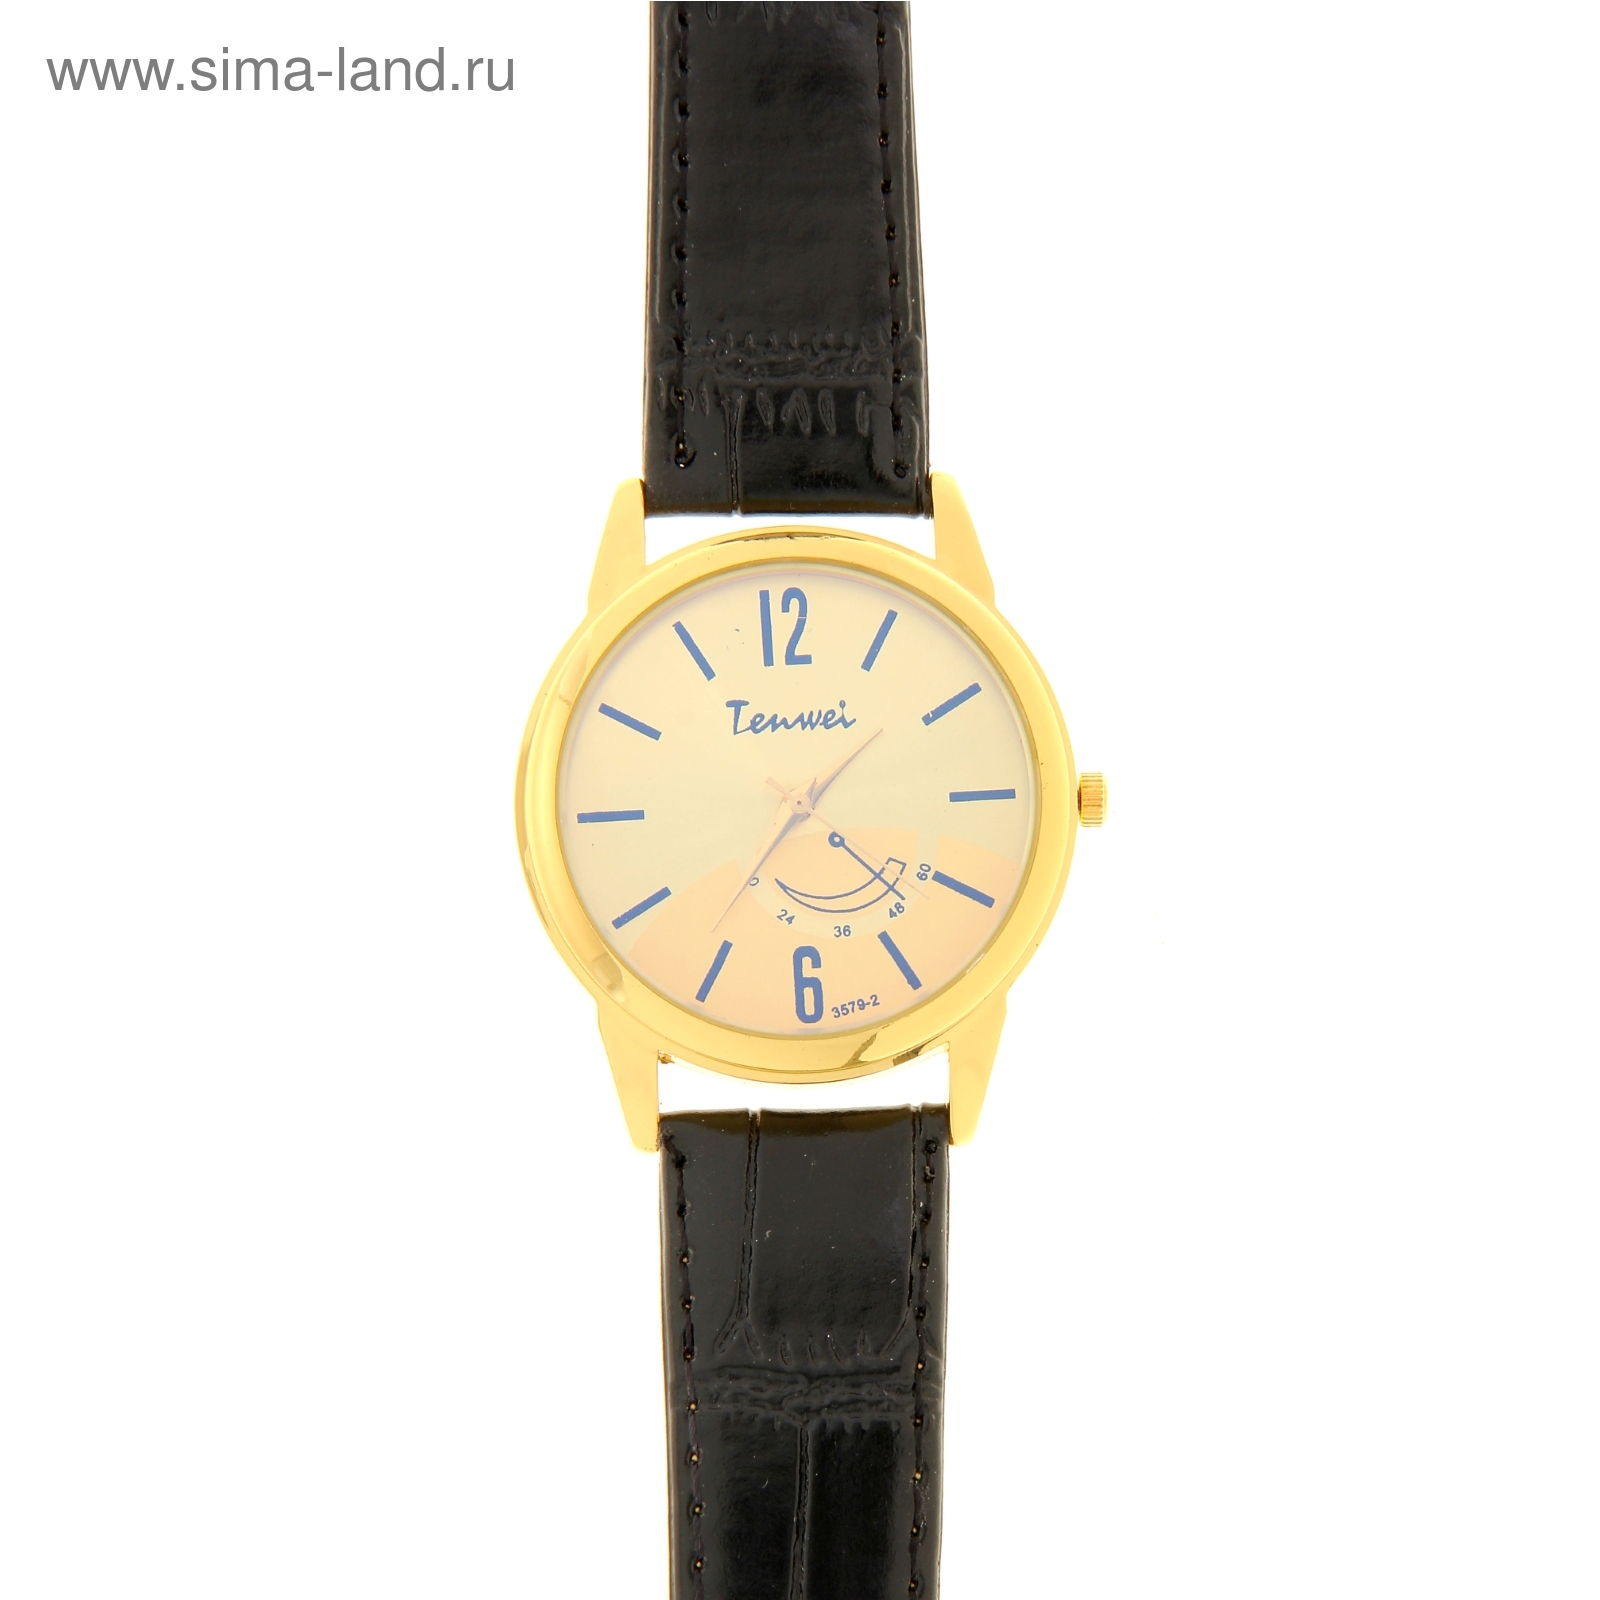 tenwei марка большой лицо часы мужчины спорт военные часы с Пу кожа  кварцевые часы мужские наручные часы relogio мужской | Отзывы покупателей  nazya.com